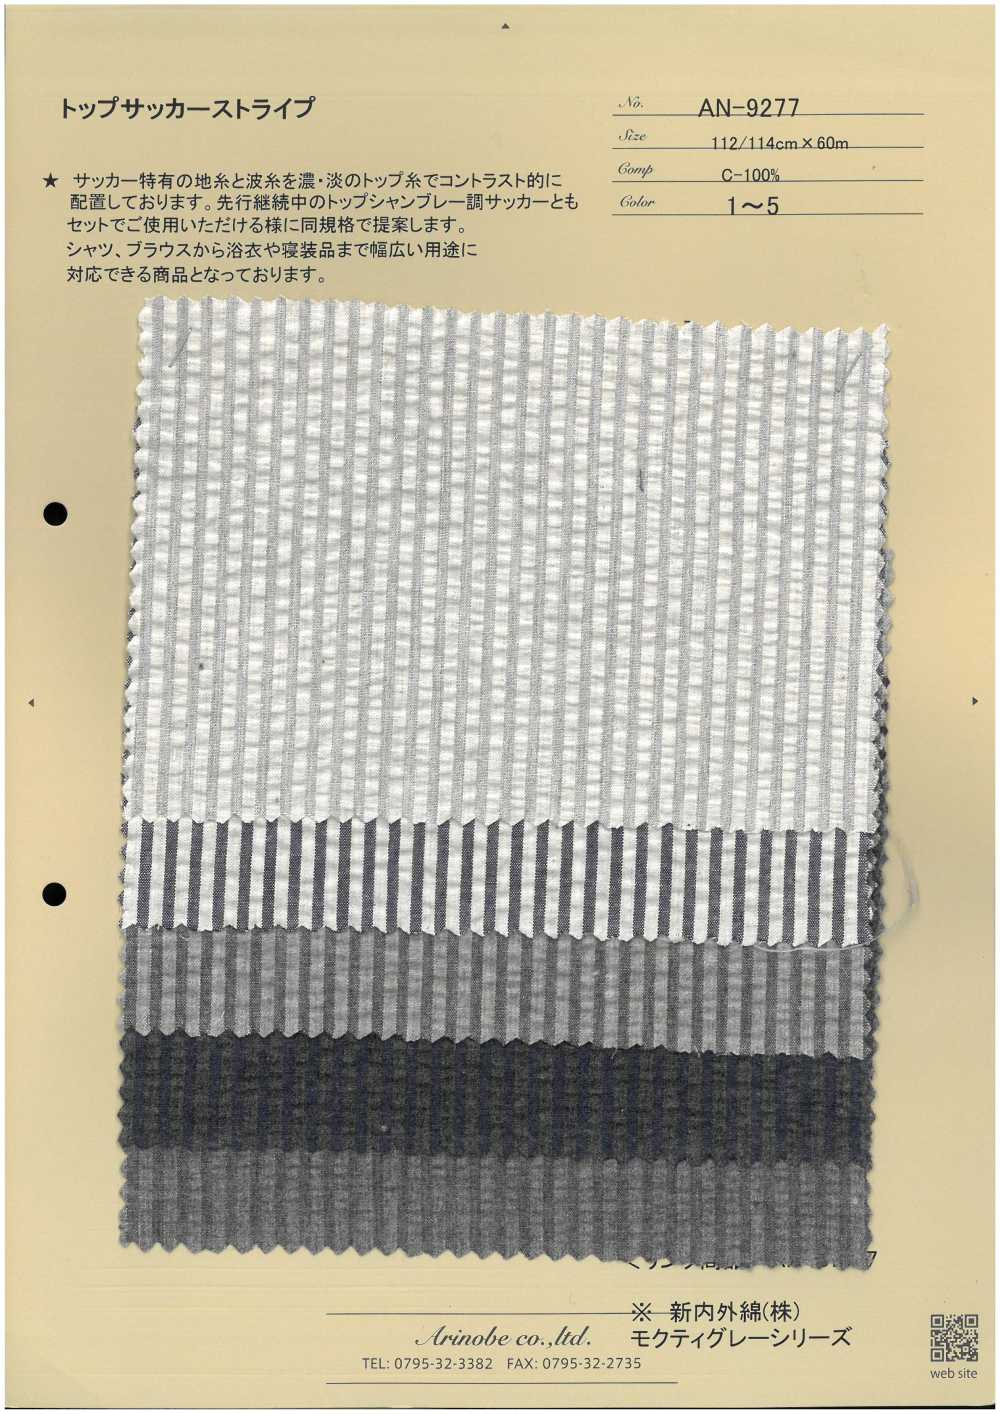 AN-9277 Kẻ Sọc Vải Sọc Nhăn Hàng đầu ARINOBE CO., LTD.